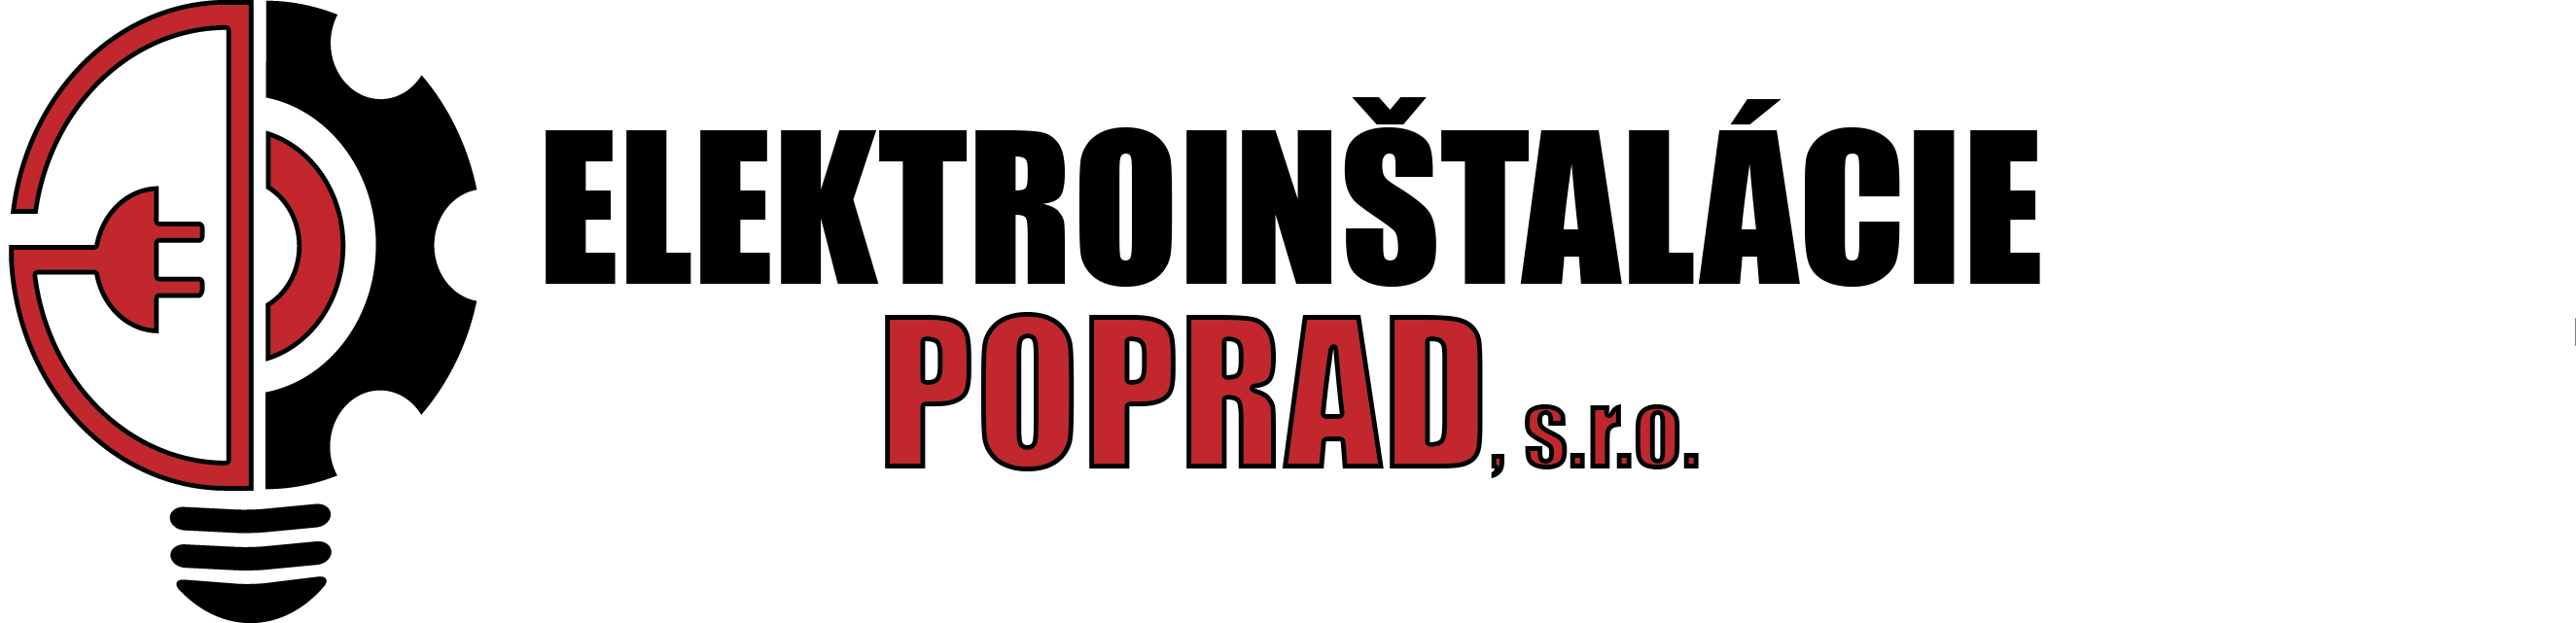 Elektroinštalácie Poprad, s.r.o. - logo